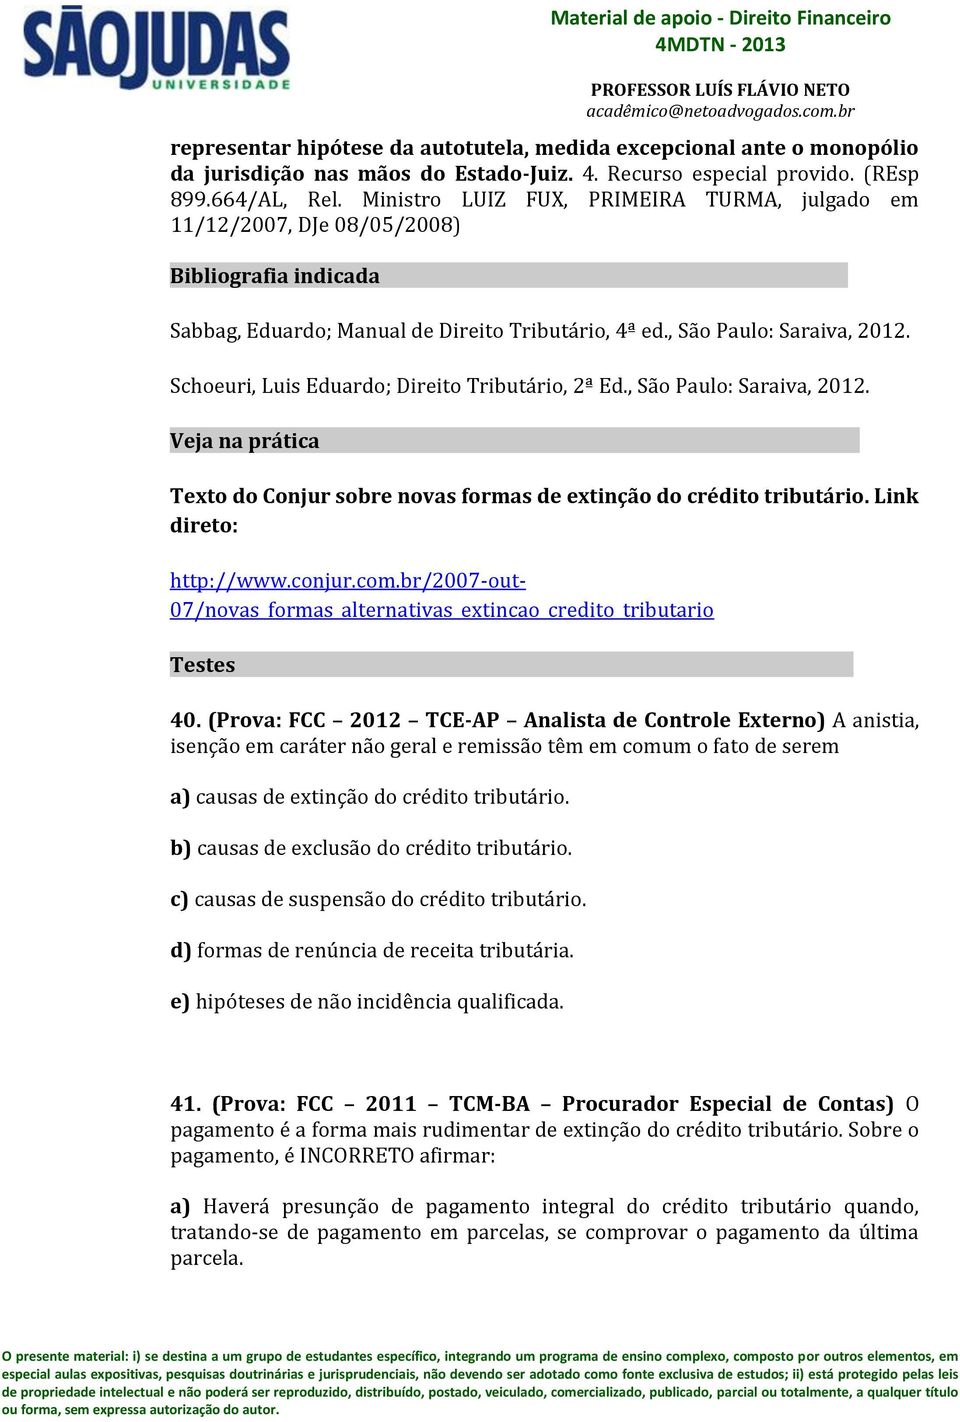 , São Paulo: Saraiva, 2012. Schoeuri, Luis Eduardo; Direito Tributário, 2ª Ed., São Paulo: Saraiva, 2012. Veja na prática ---------- -------------- -------------- Texto do Conjur sobre novas formas de extinção do crédito tributário.